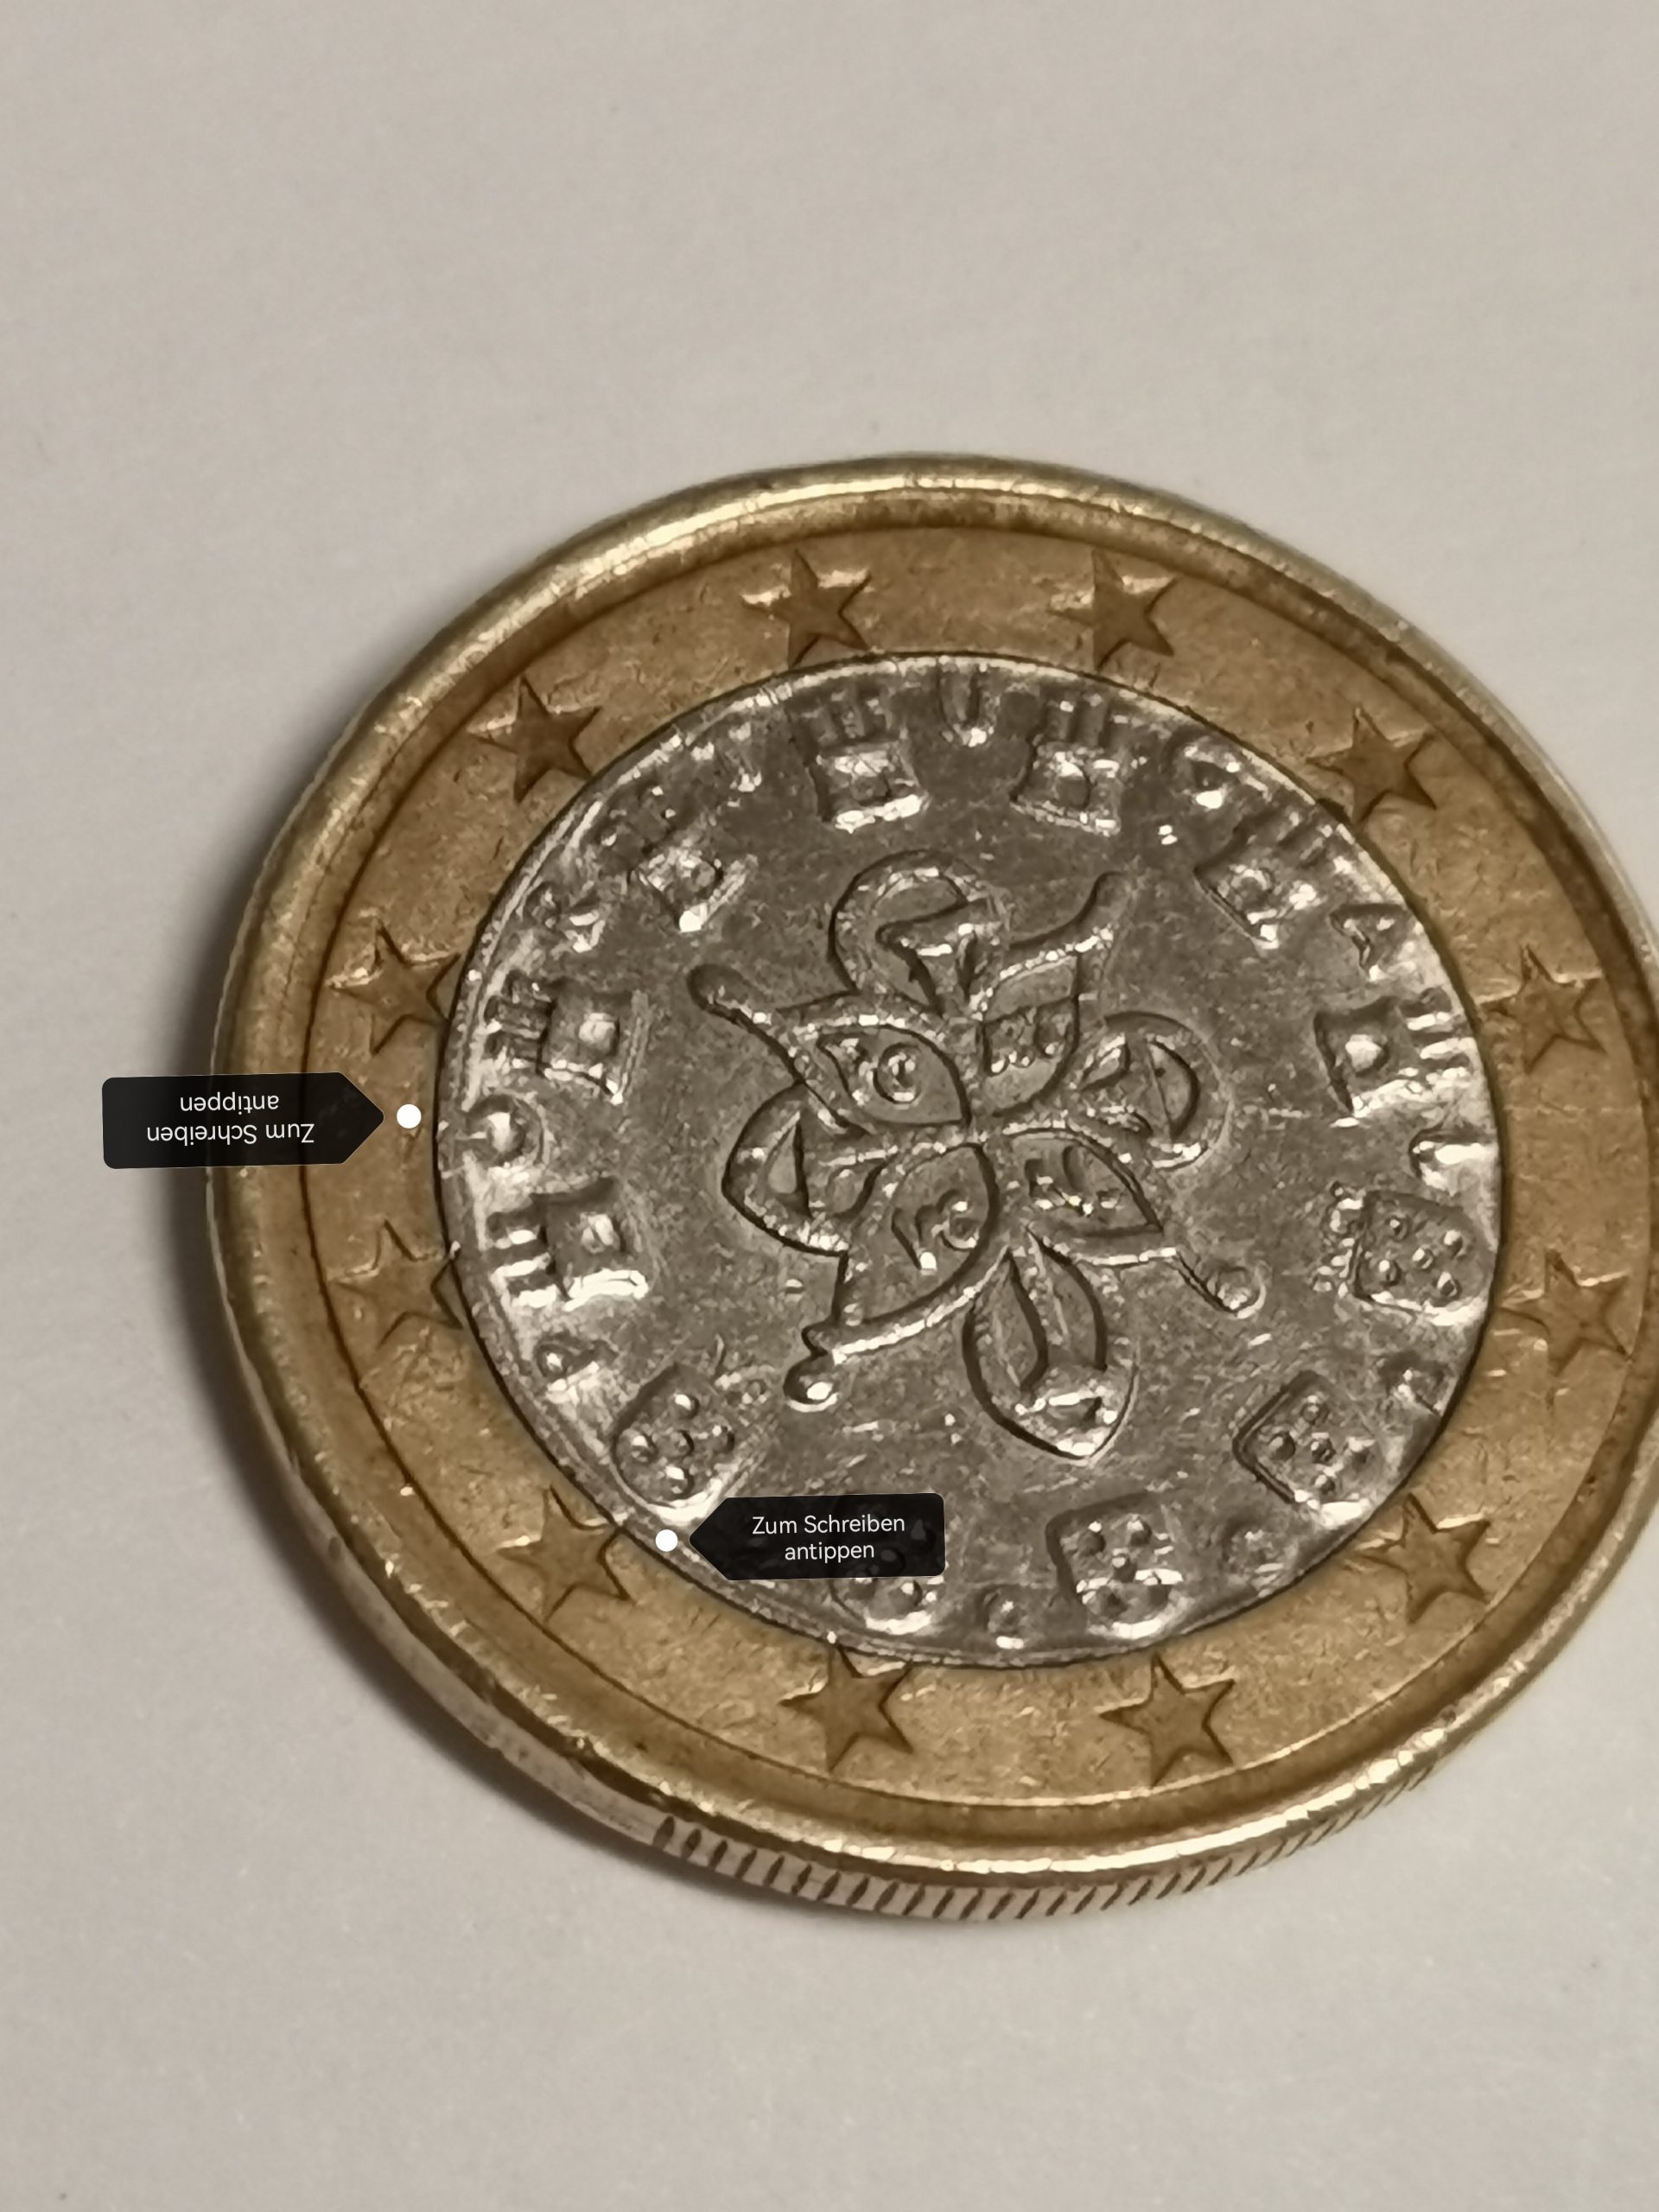 1 Euro Münze aus Portugal 2002 an mit mehreren fehlprägungen.